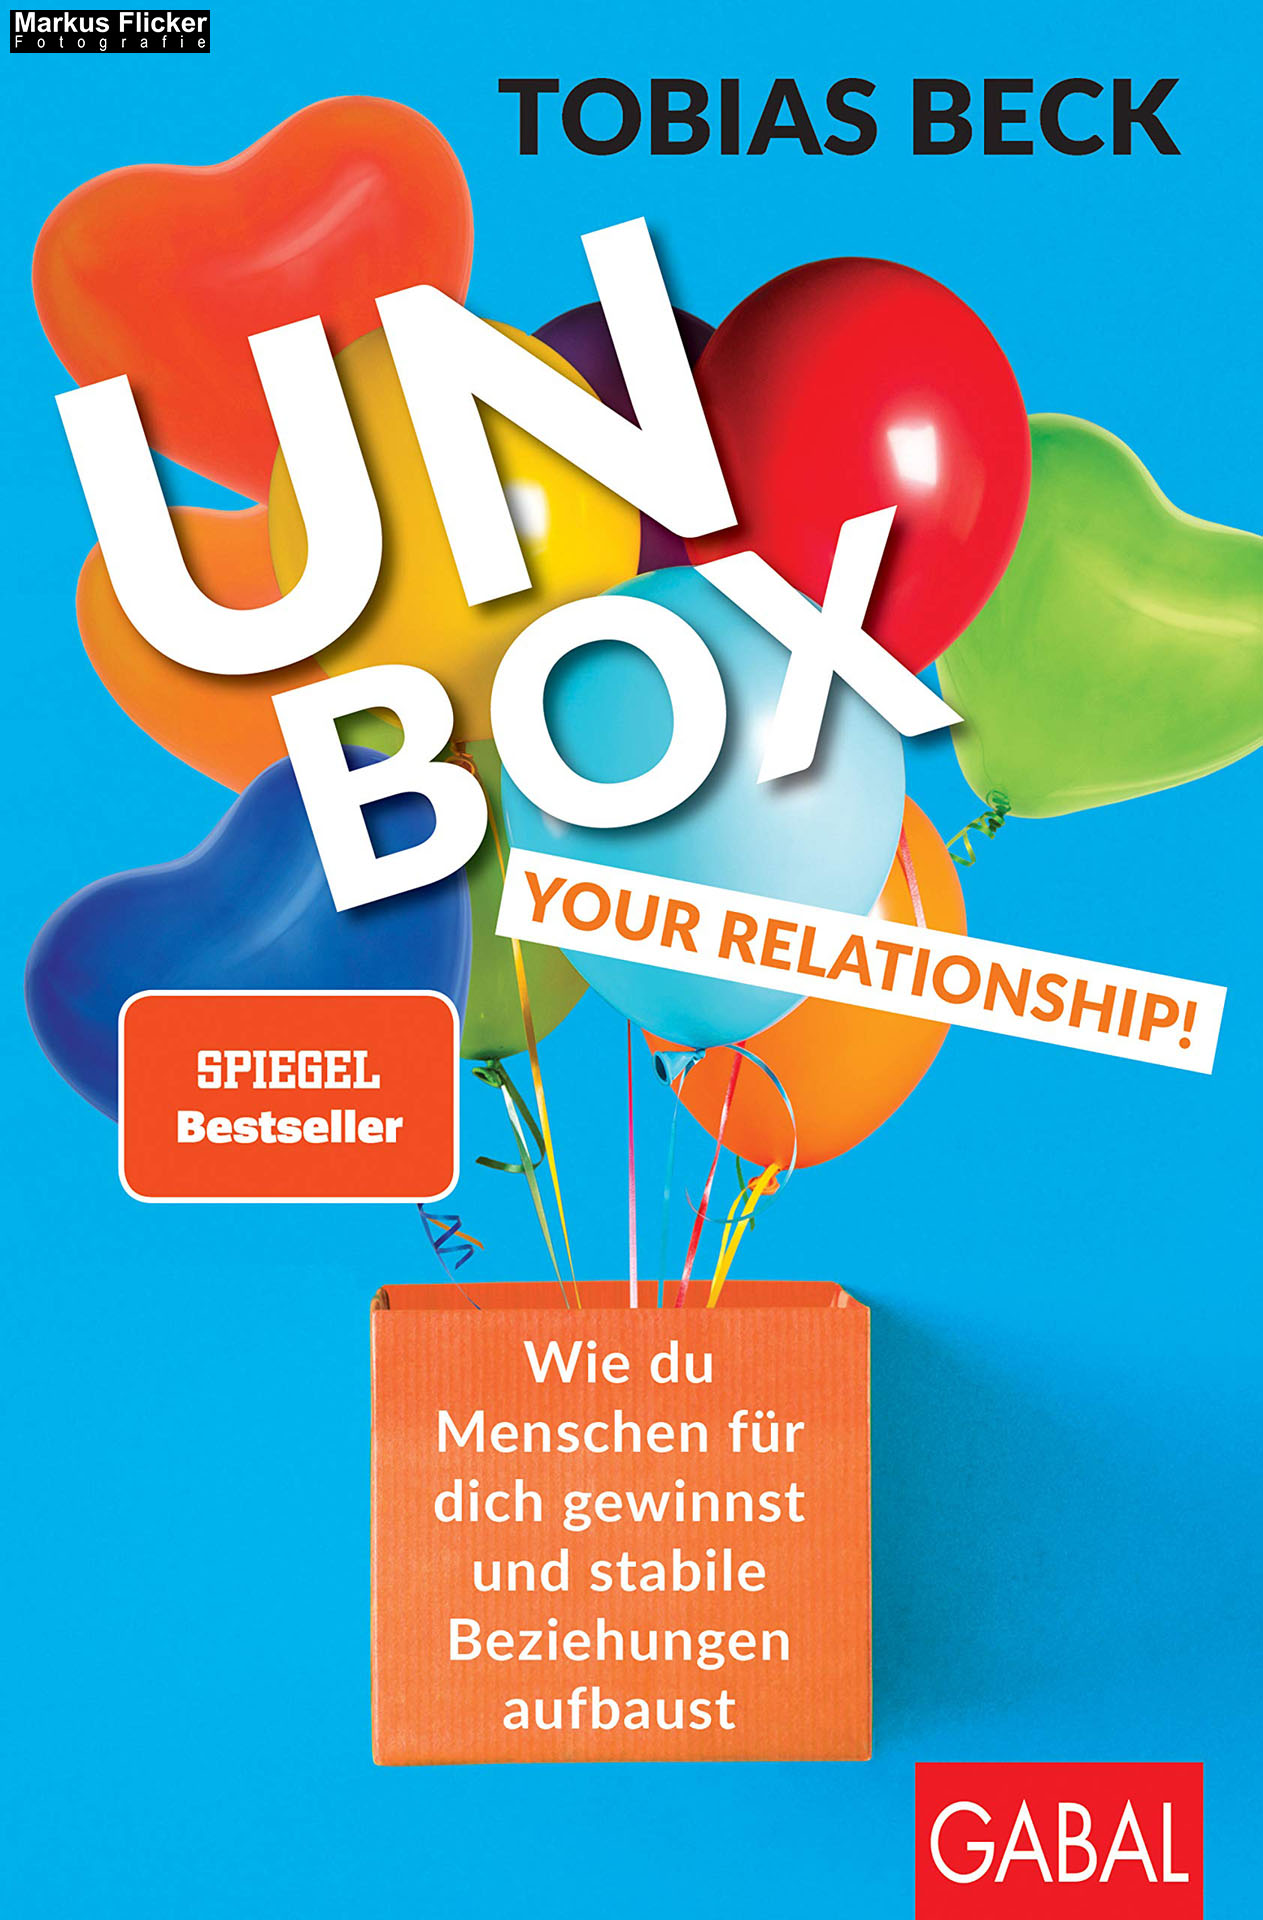 Unbox your Relationship! Wie du Menschen für dich gewinnst und stabile Beziehungen aufbaust (Dein Erfolg) von Tobias Beck